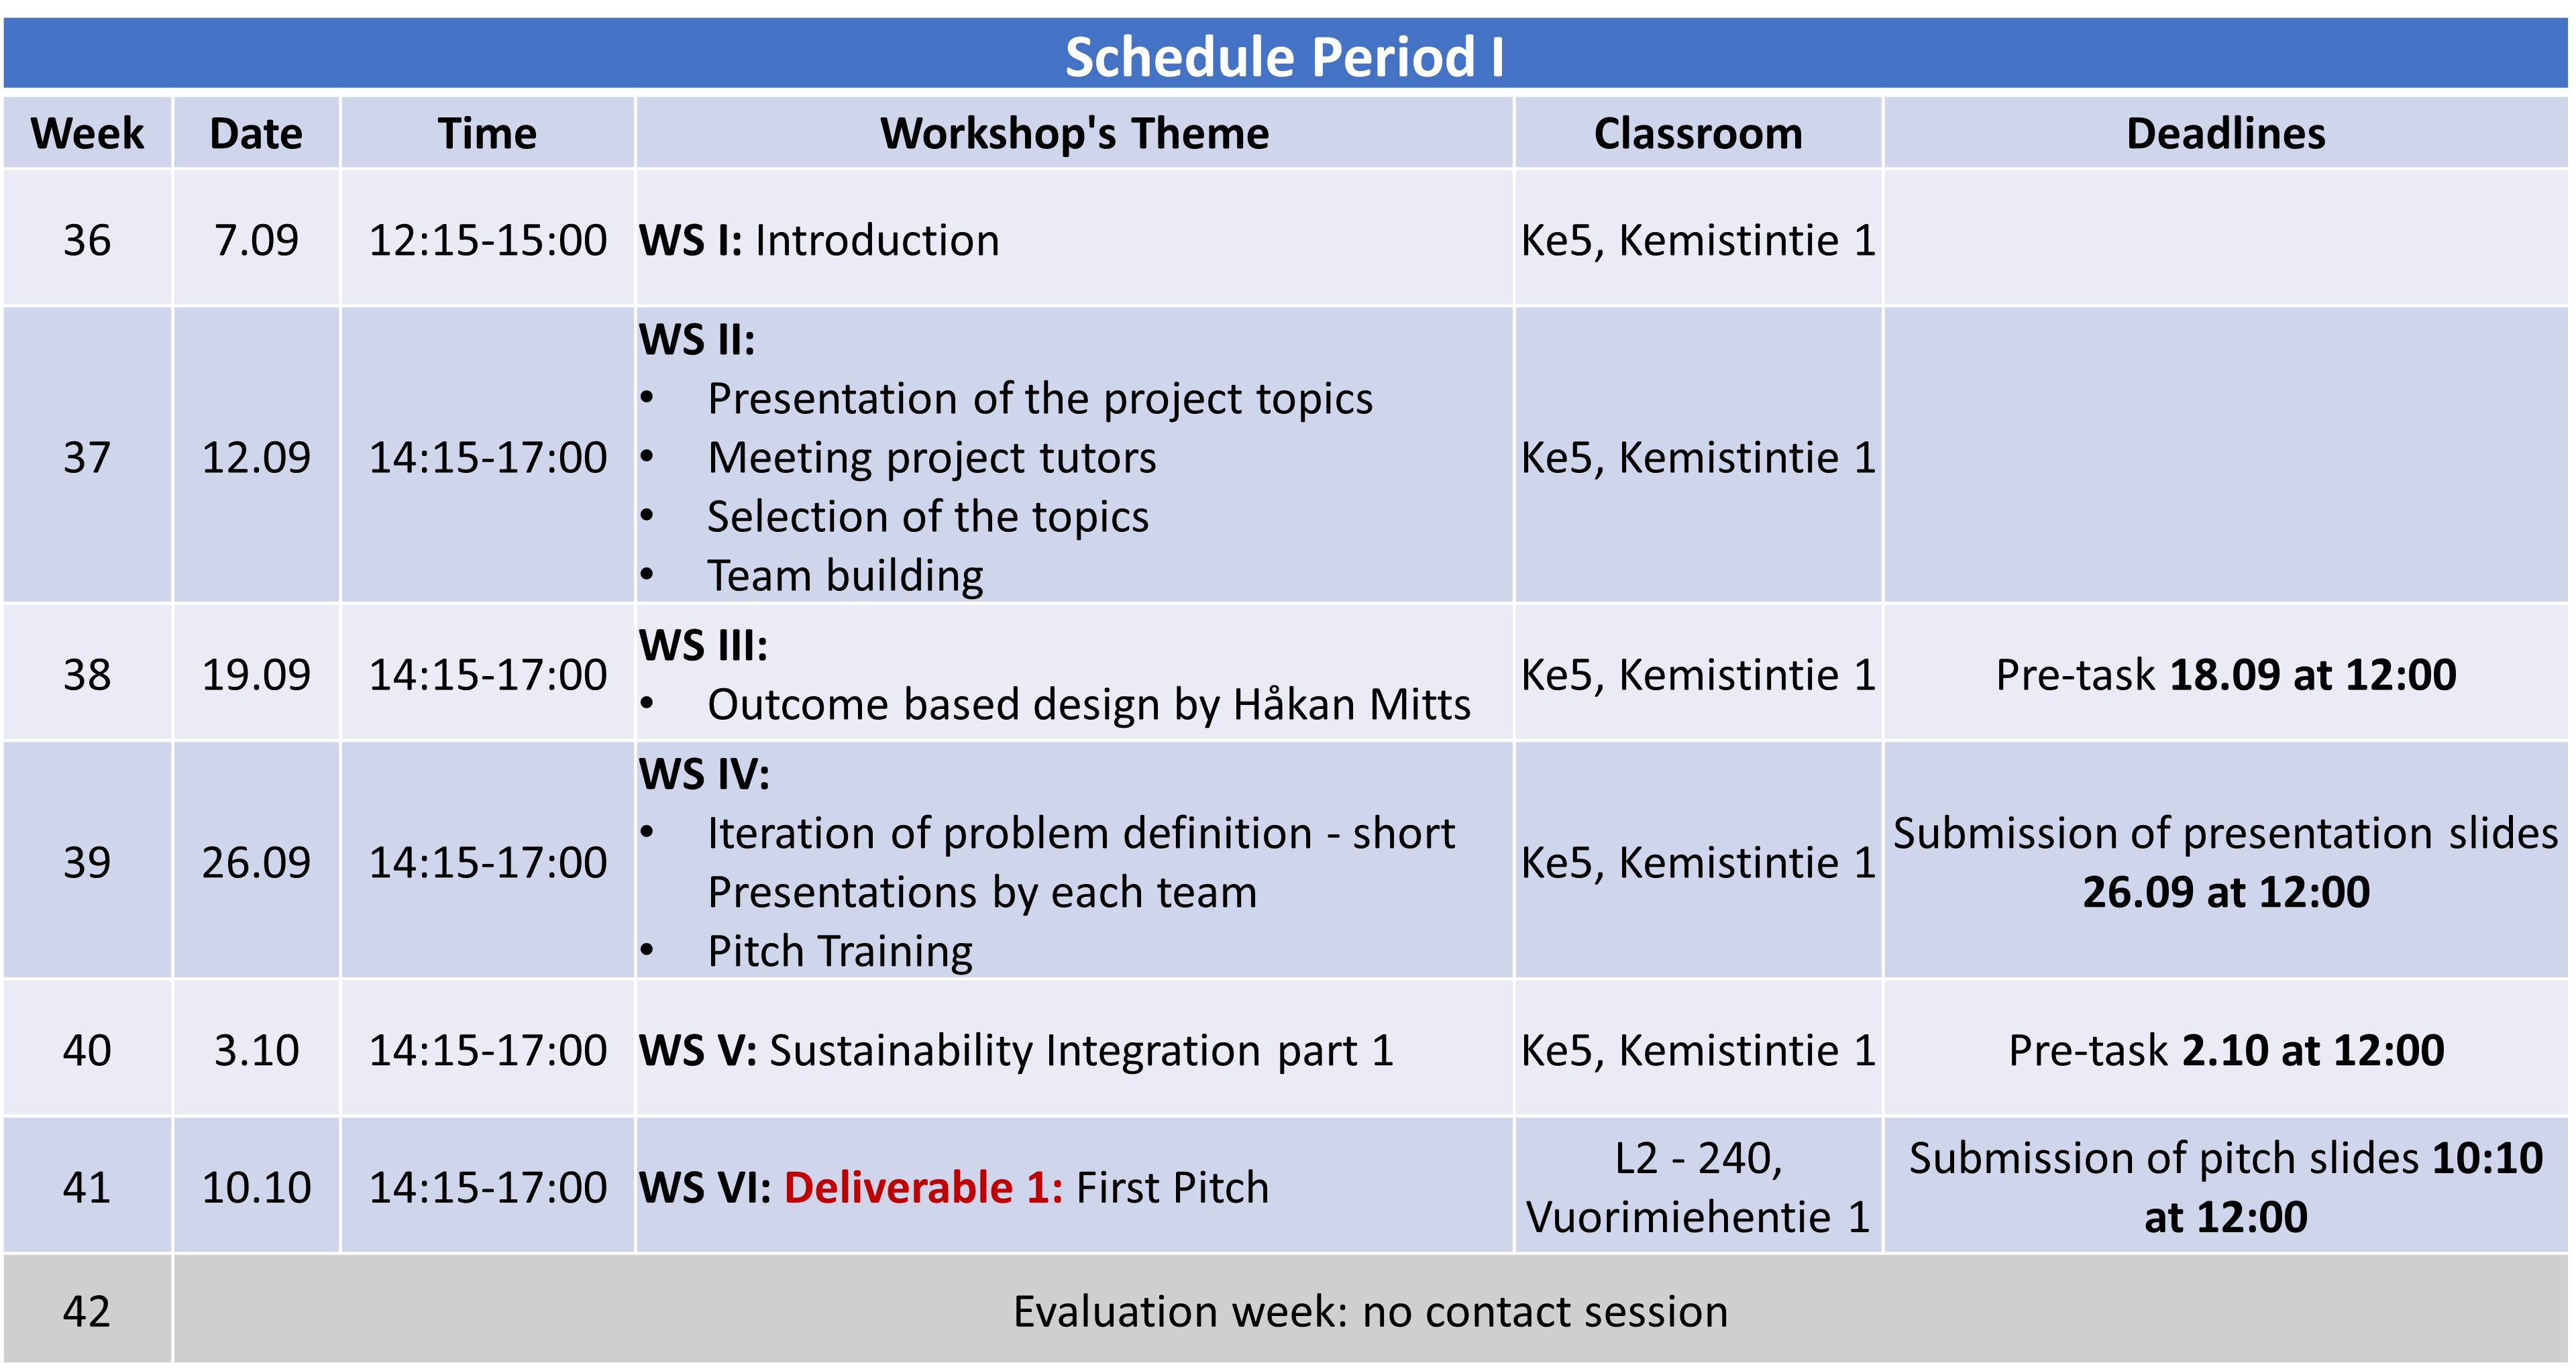 Schedule period 1